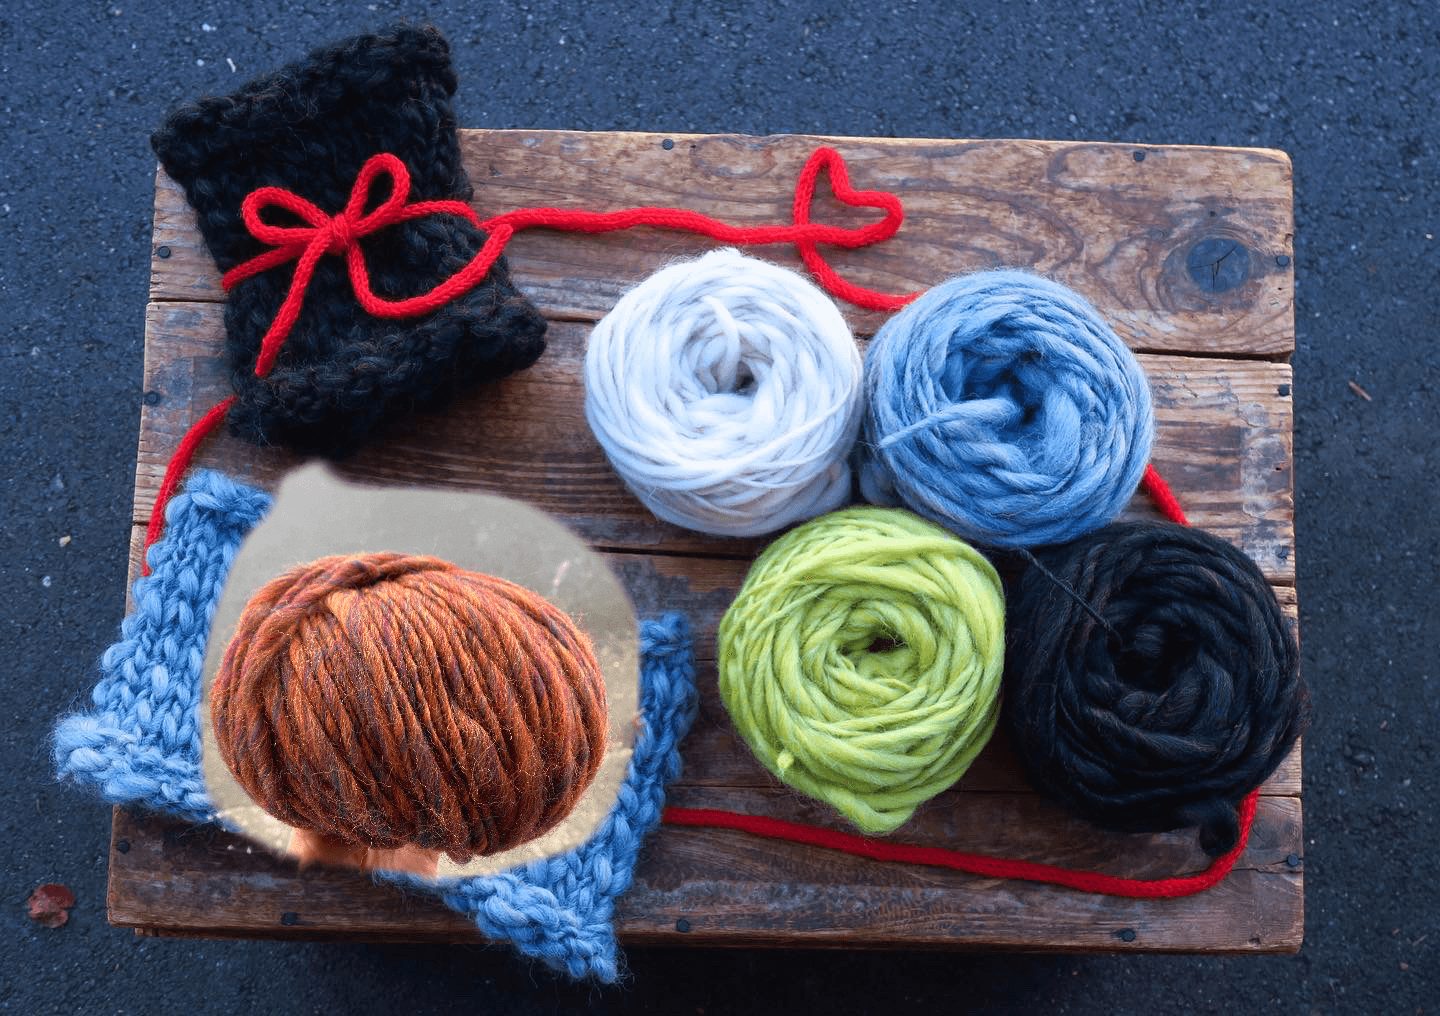 【イベント終了】秋山毛糸店ワークショップ「冬の贈り物。輪編みで暖かネックウォーマー」